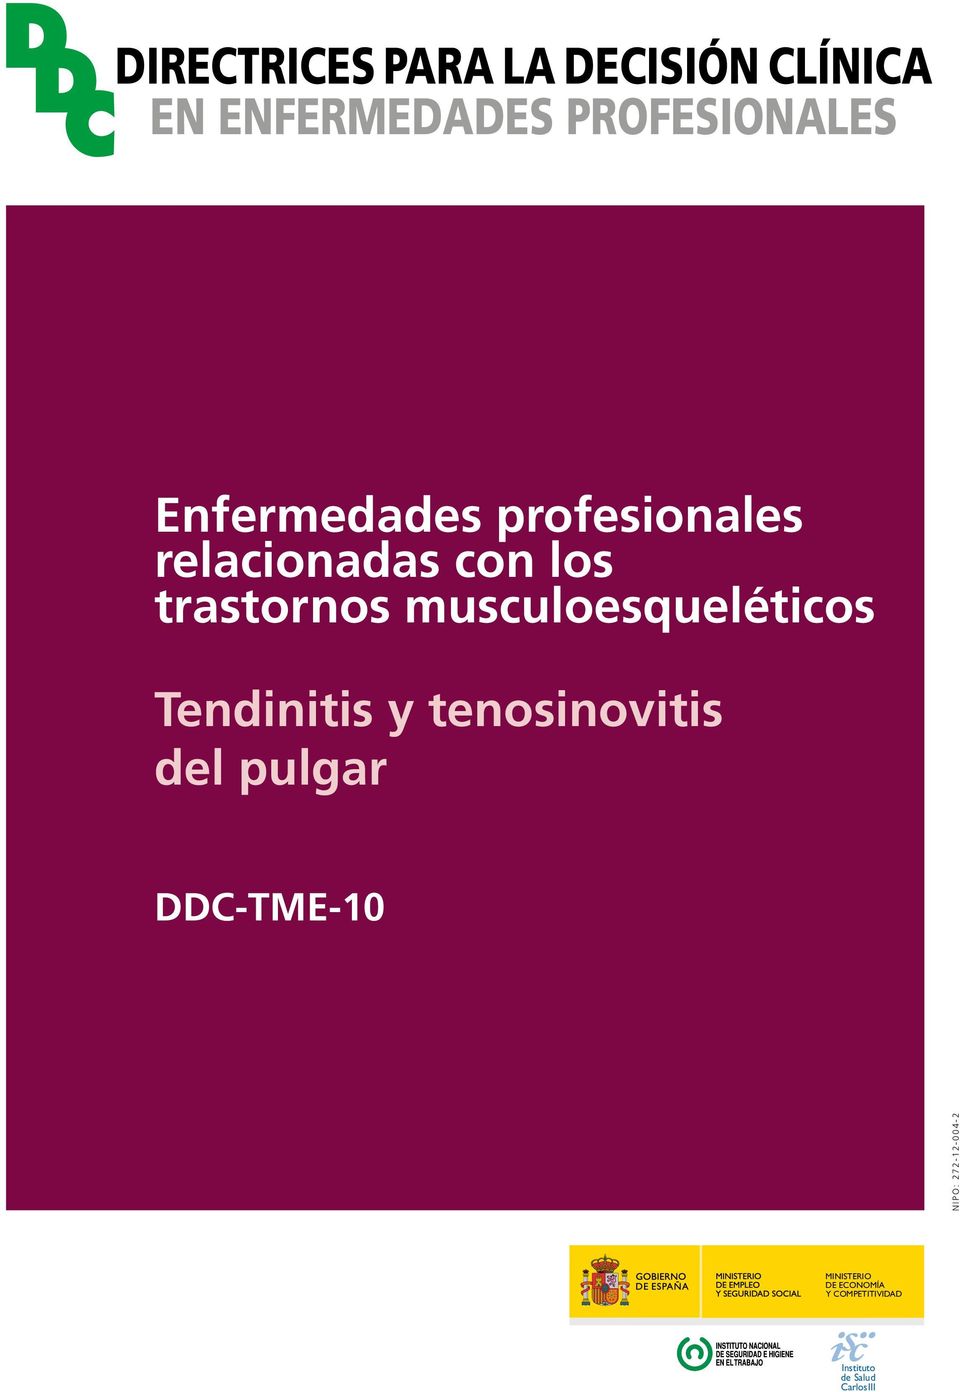 musculoesqueléticos Tendinitis y tenosinovitis del pulgar DDC-TME-10